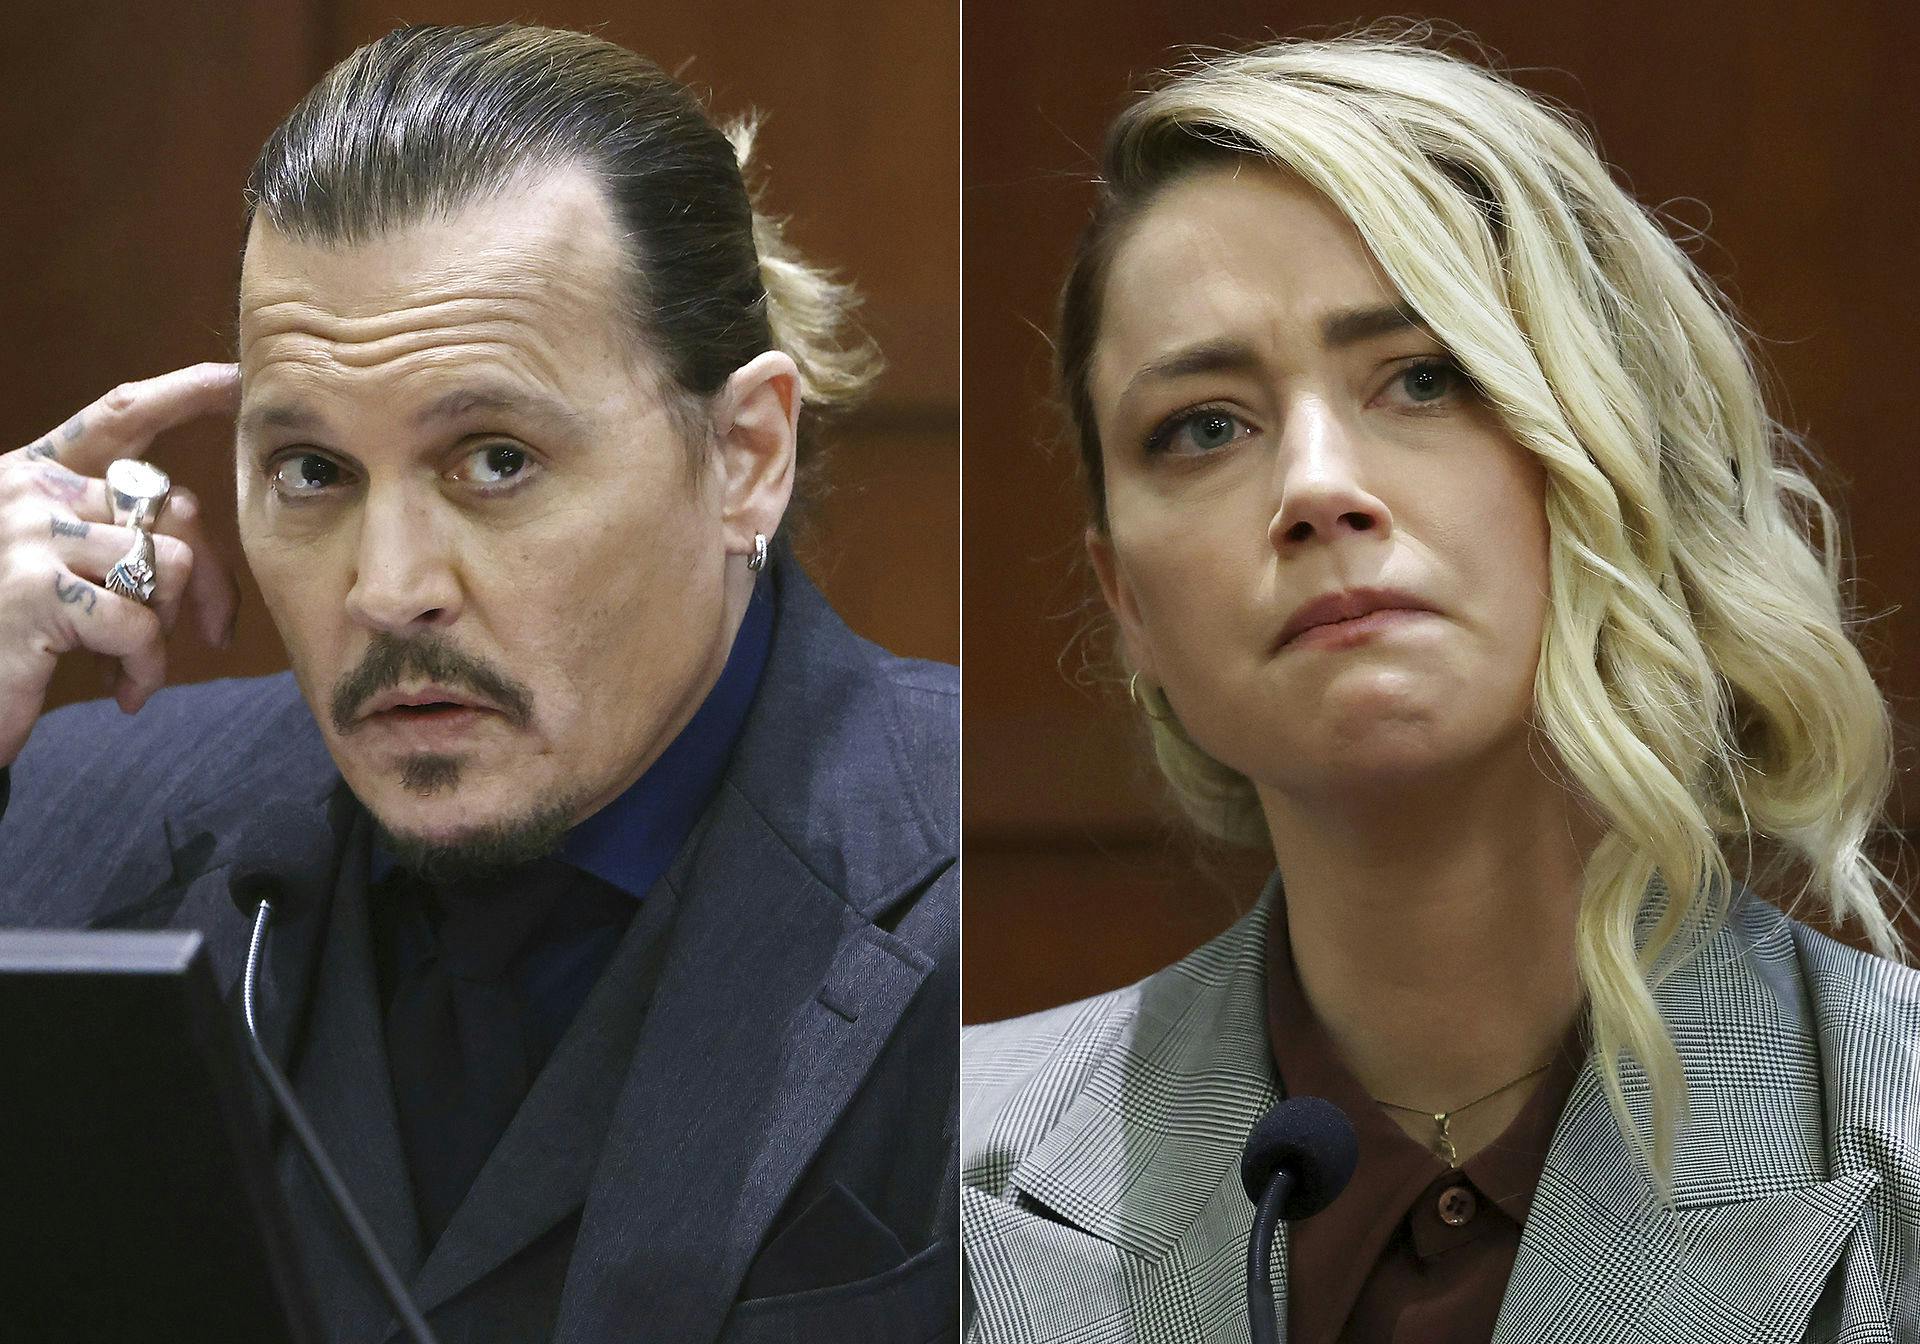 Det vilde retsdrama mellem Johnny Depp og Amber Heard udspillede sig sidste år.
